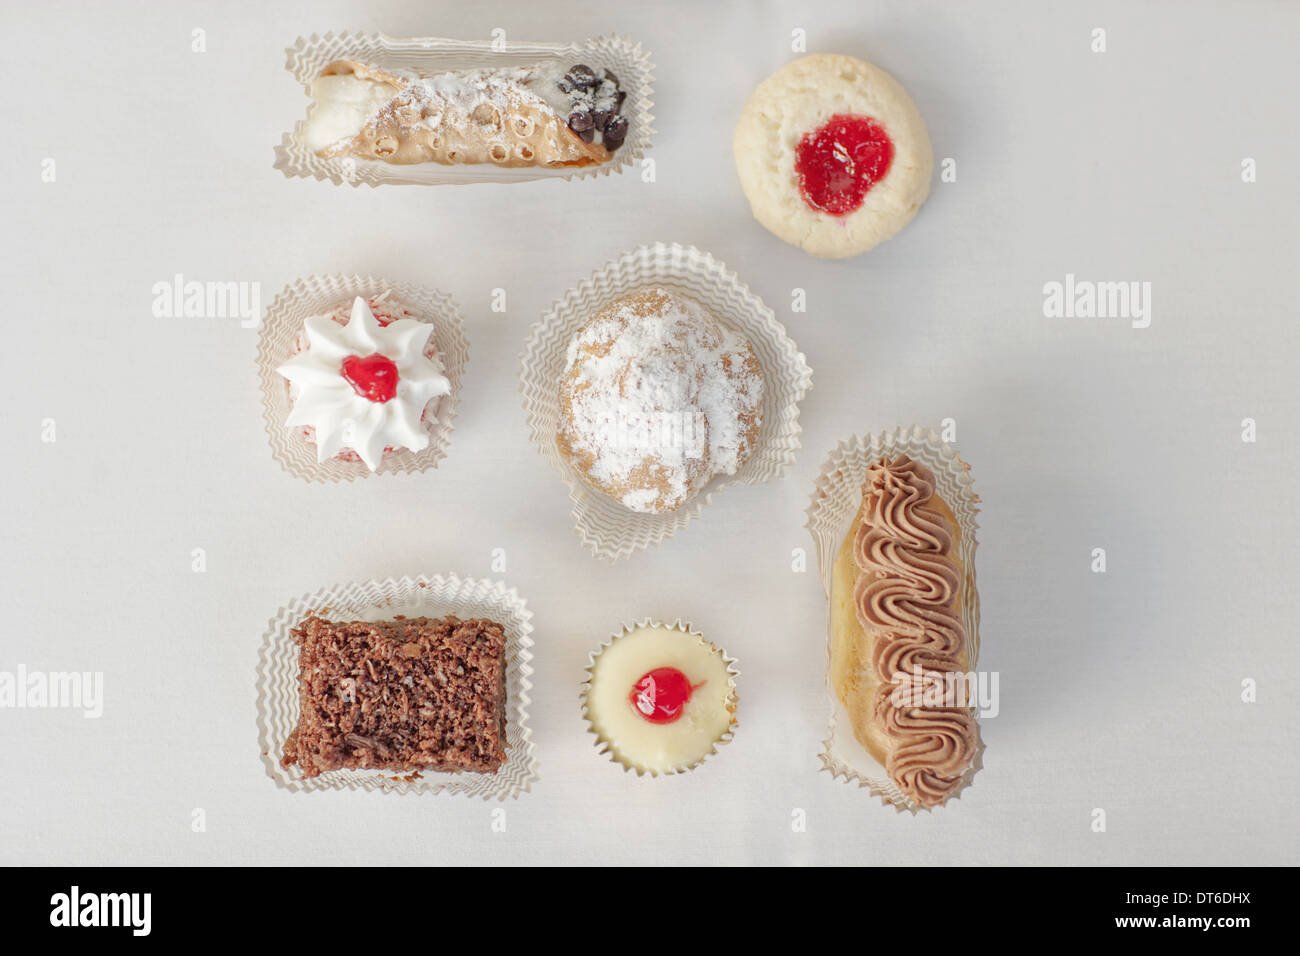 Eine Auswahl von Partei Desserts, Bio-Lebensmittel, und köstliche Kuchen und Gebäck. Stockfoto